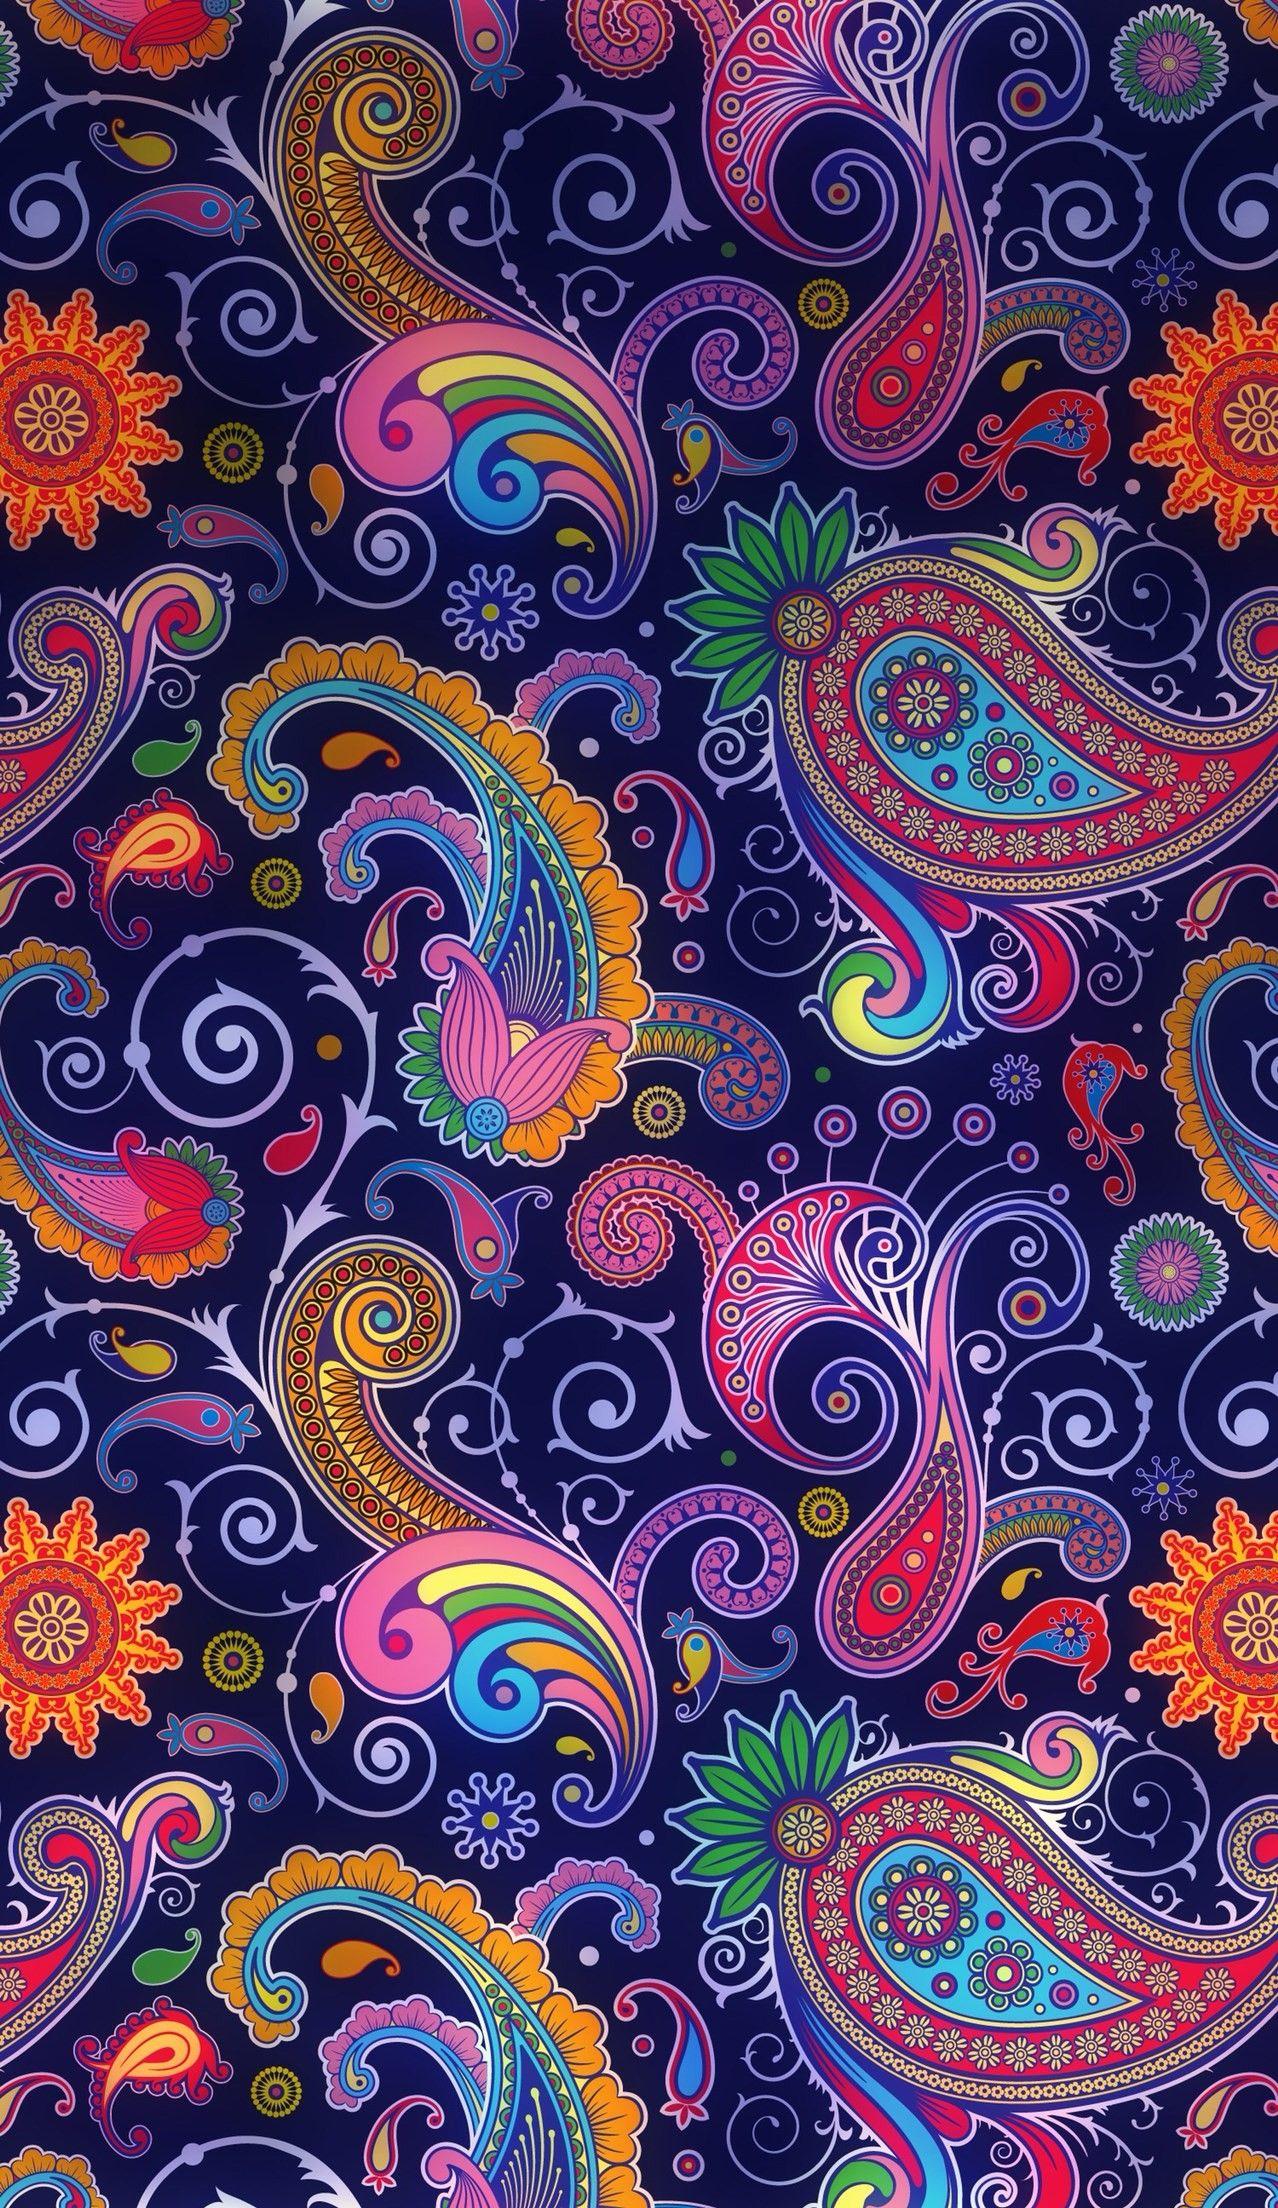 Mandala iPhone Wallpaper